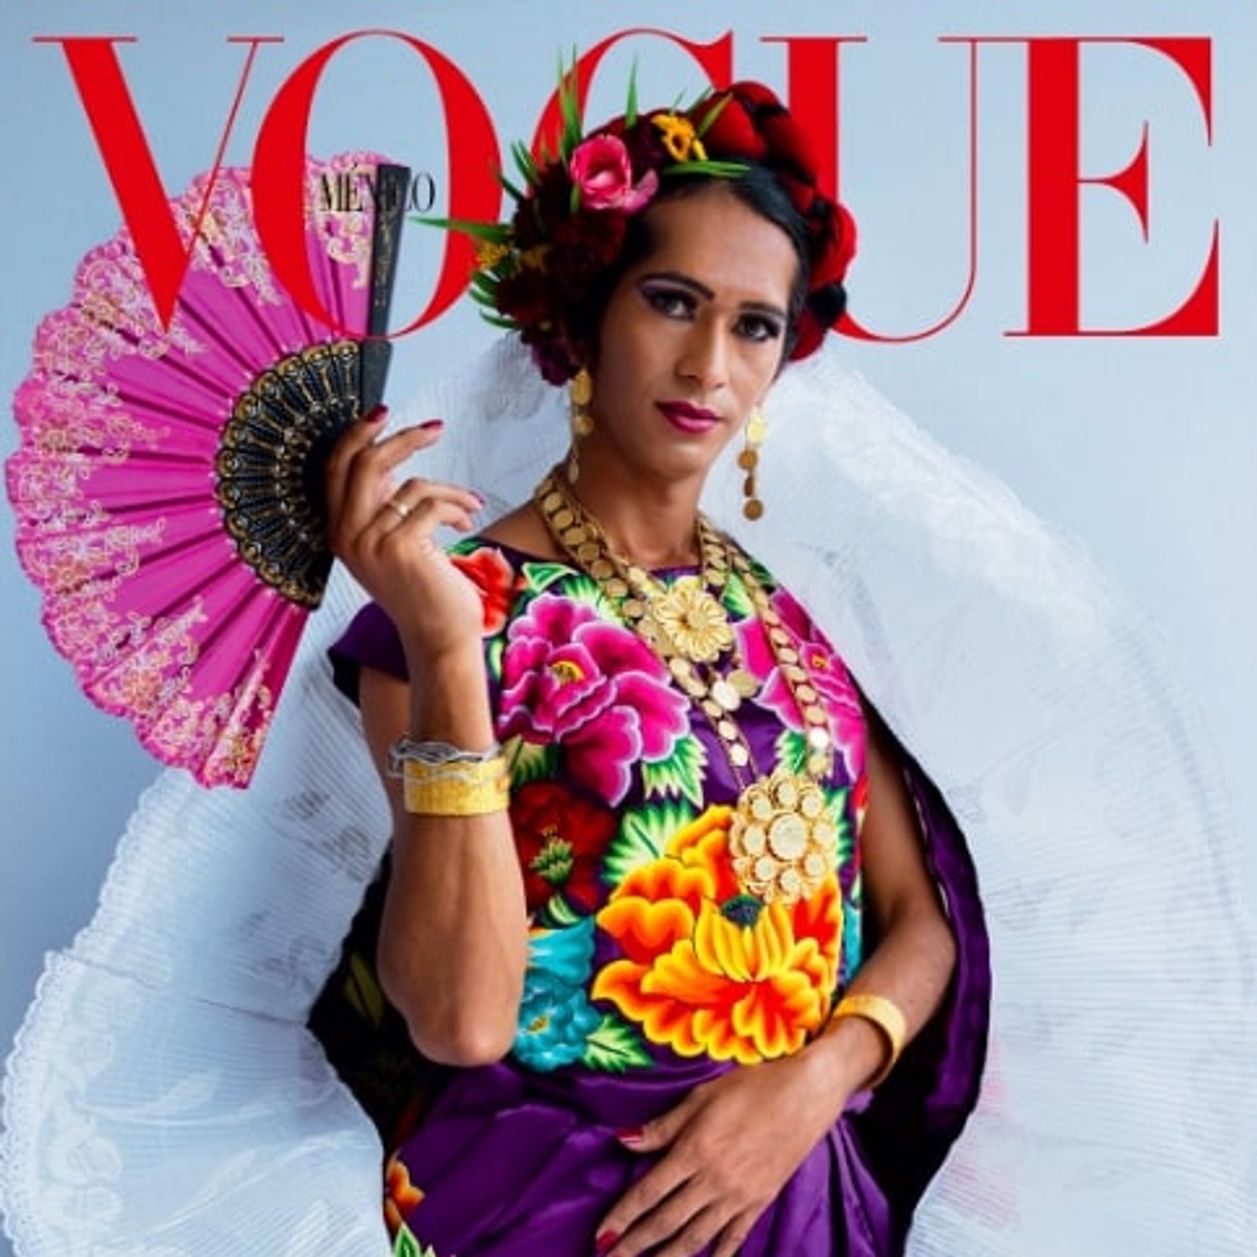 Une femme indigène transgenre en Une du Vogue Mexique, une grande première